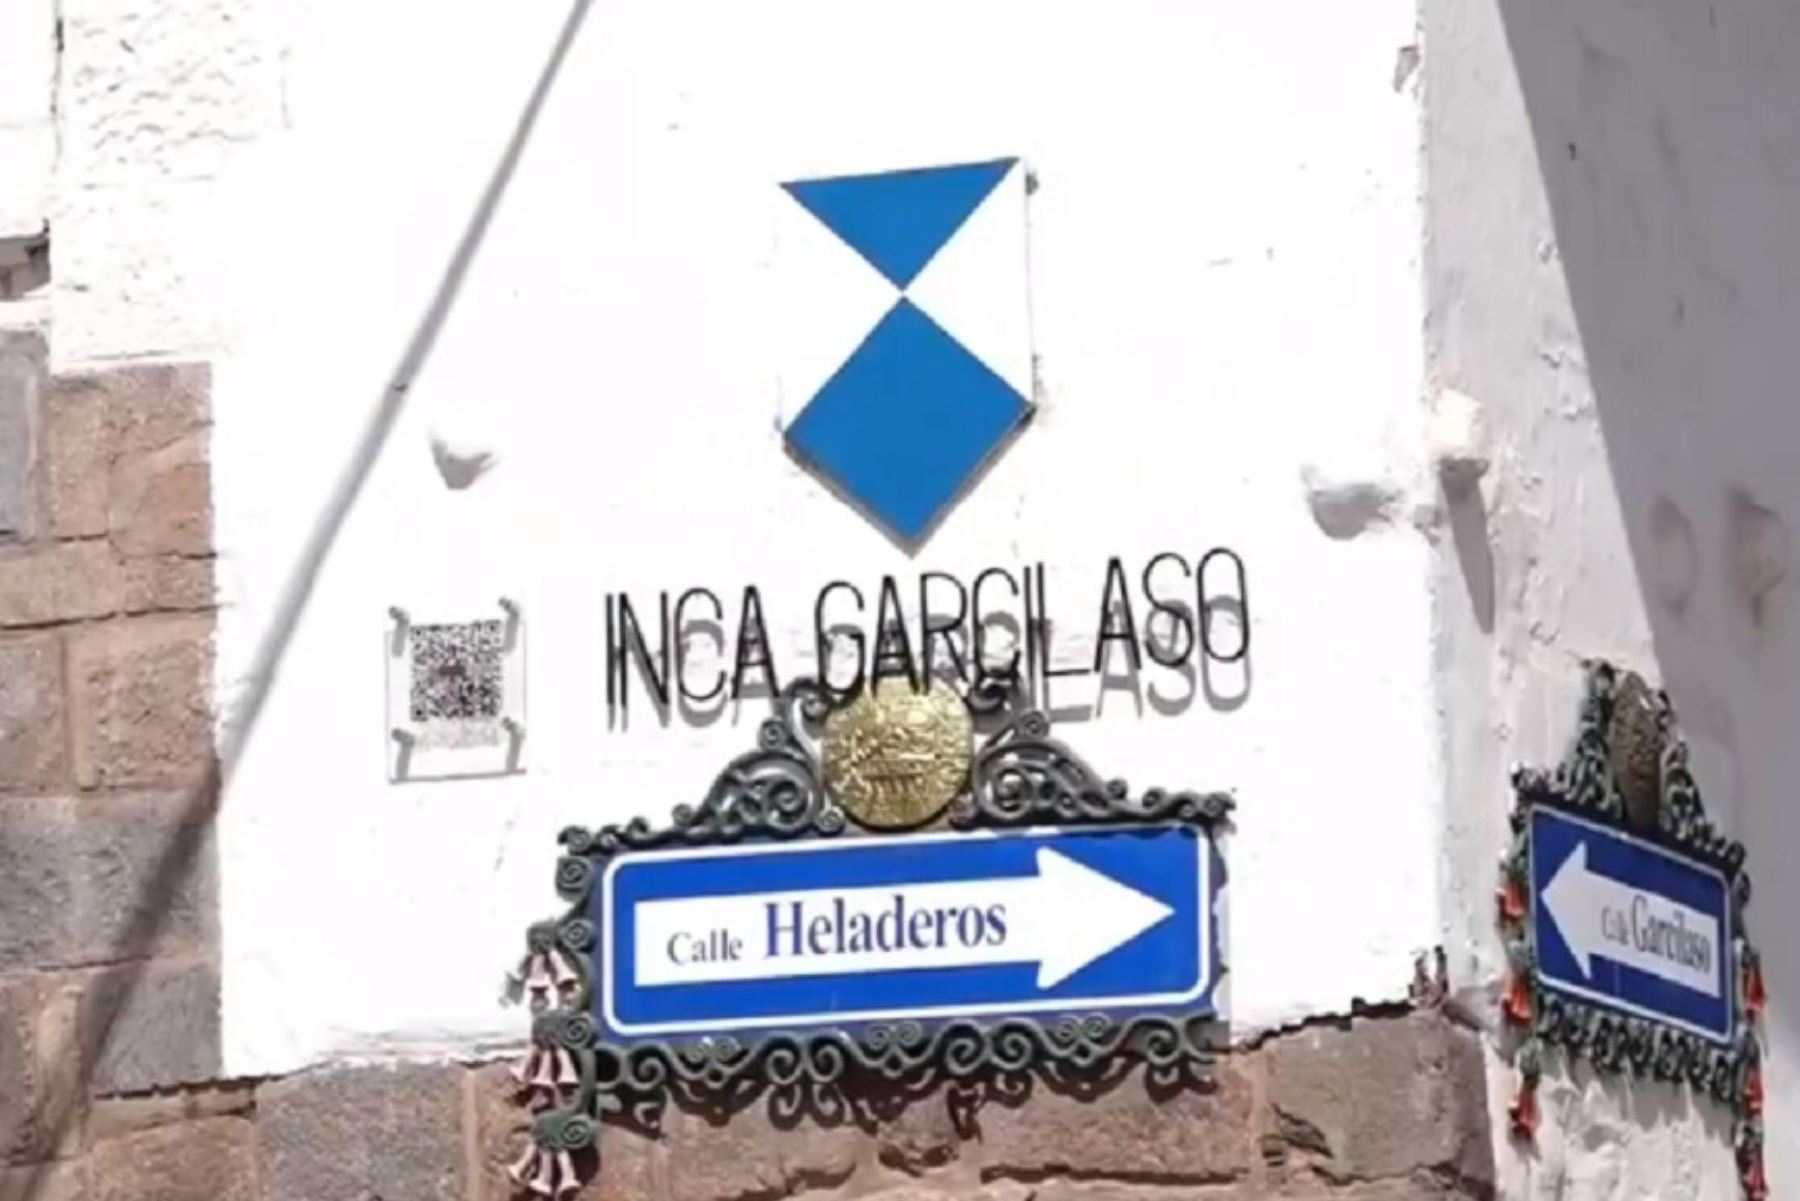 La casa del Inca Garcilaso de la Vega, actualmente sede del Museo Histórico Regional de Cusco, se convirtió hoy en el primer monumento de dicha región que cuenta con el Escudo Azul de la Unesco, importante distintivo otorgado por el organismo internacional que lo reconoce como inmueble cultural con protección especial frente a cualquier amenaza de deterioro.